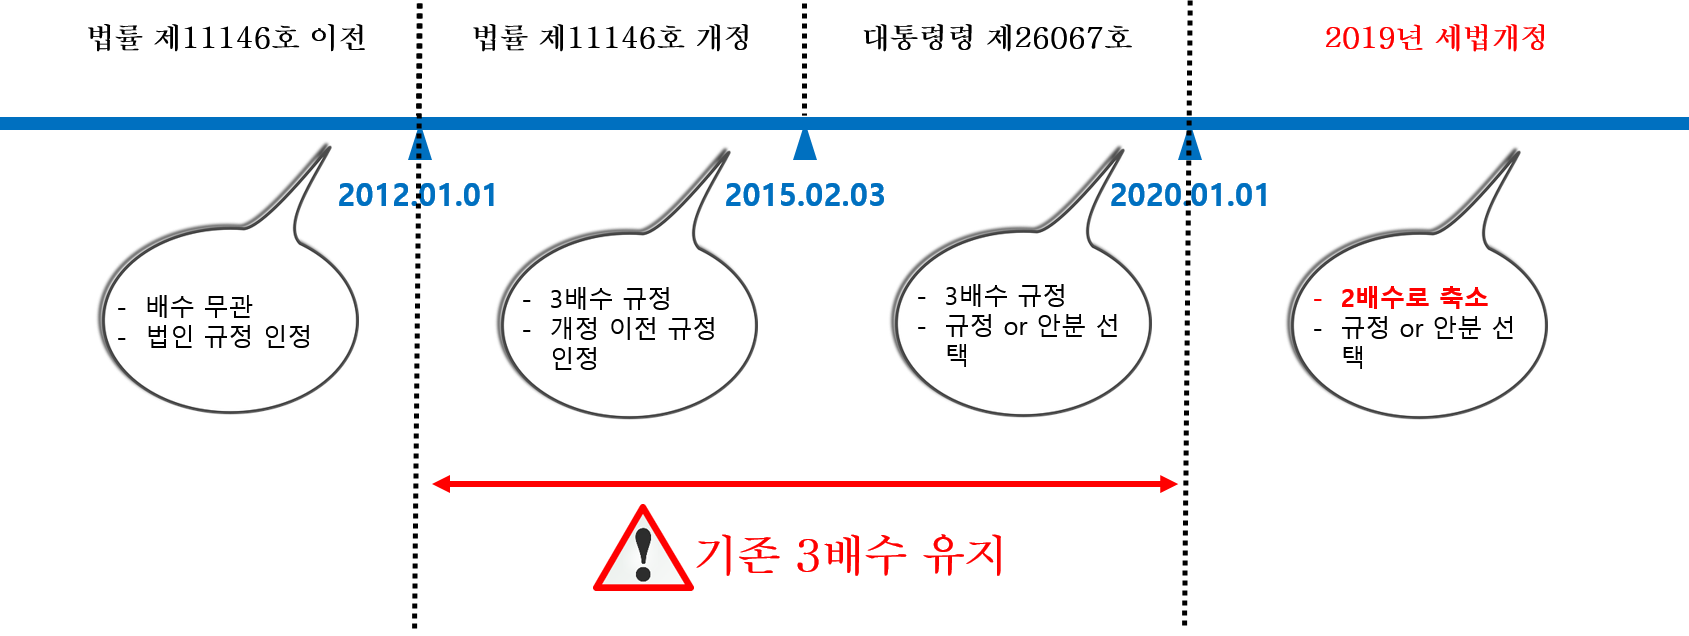 임원퇴직금 소득세법 개정 연혁